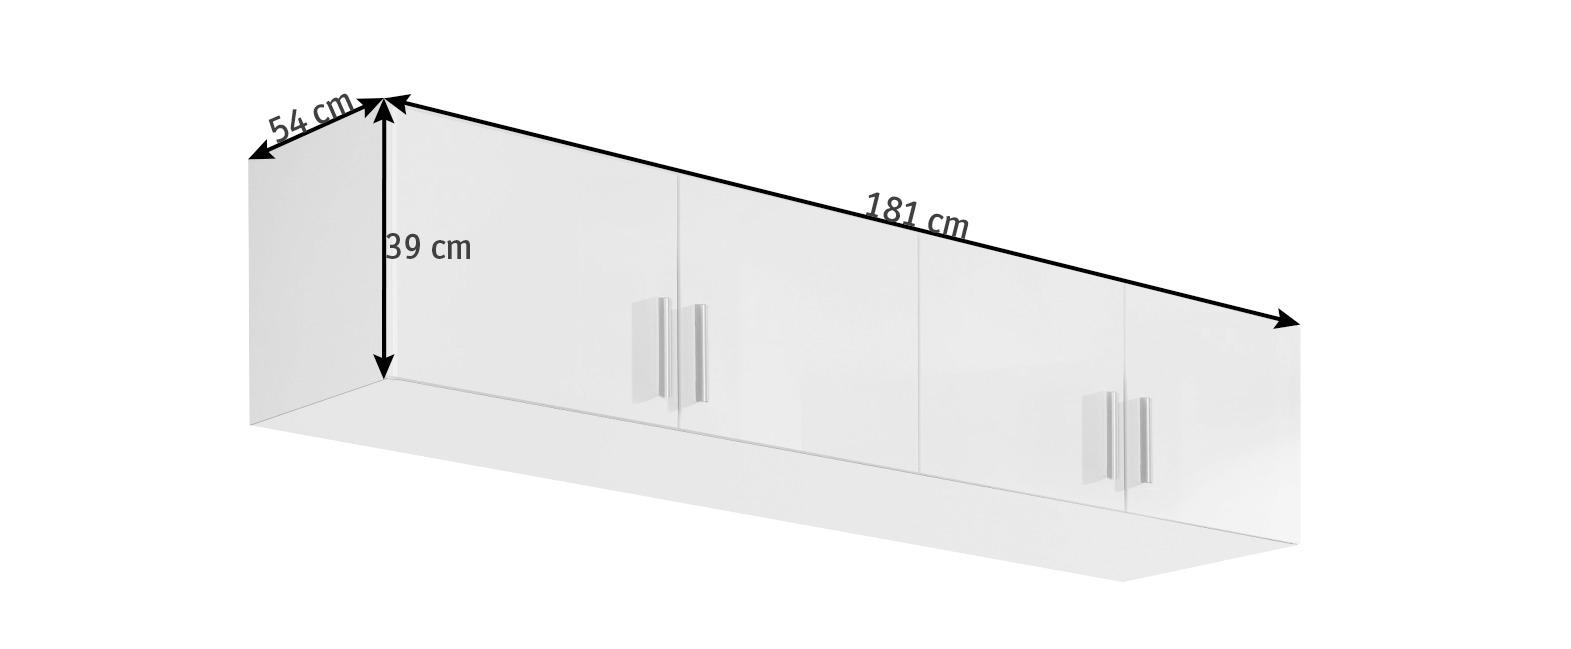 AUFSATZSCHRANK 181/39/54 cm Weiß, Weiß Hochglanz  - Weiß Hochglanz/Alufarben, Design, Kunststoff (181/39/54cm) - Carryhome